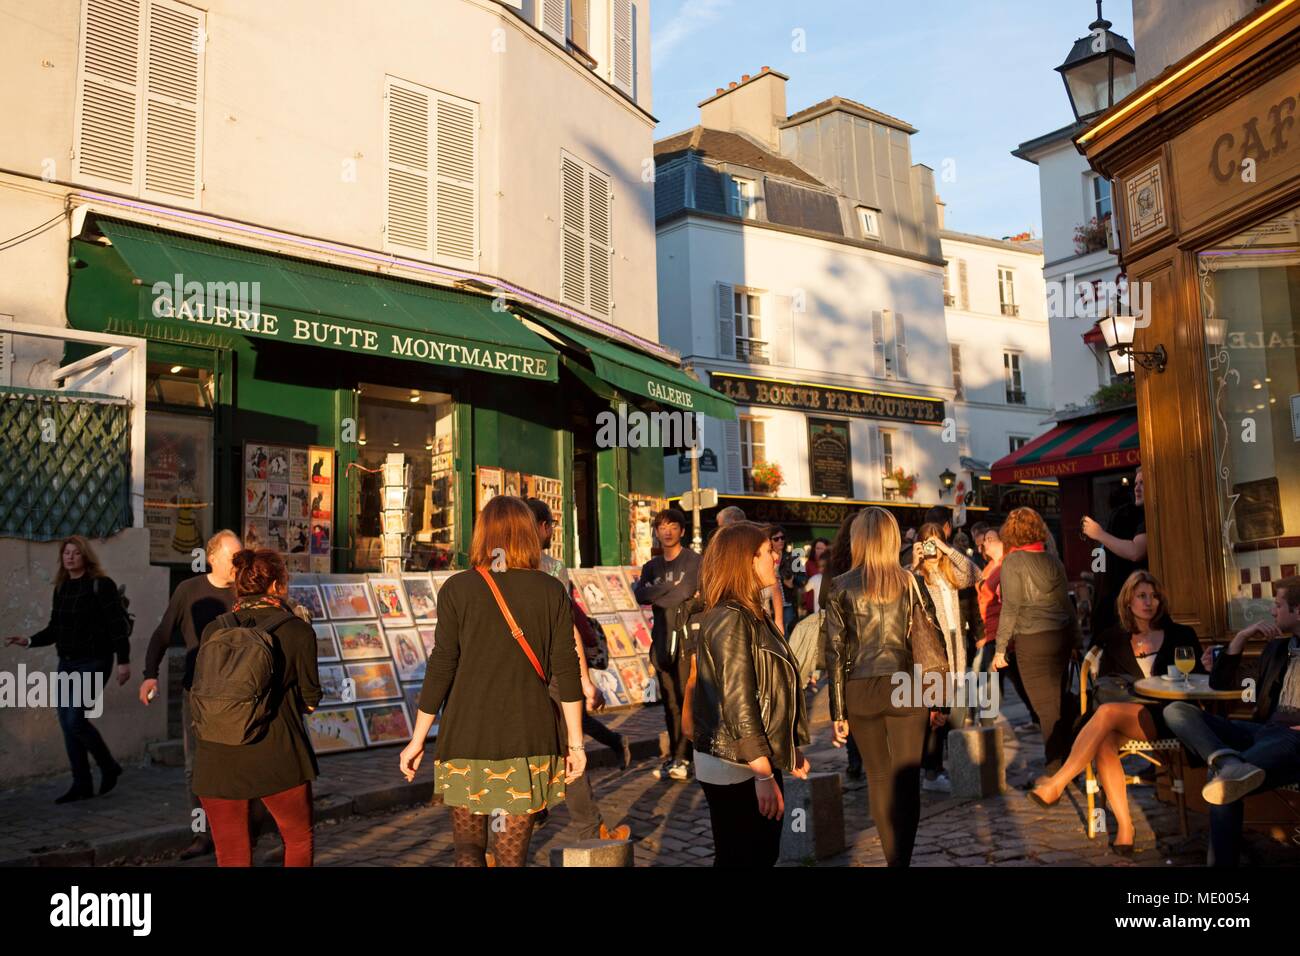 Paris, Montmartre, place jean baptiste clement, angle rue norvins Stock  Photo - Alamy